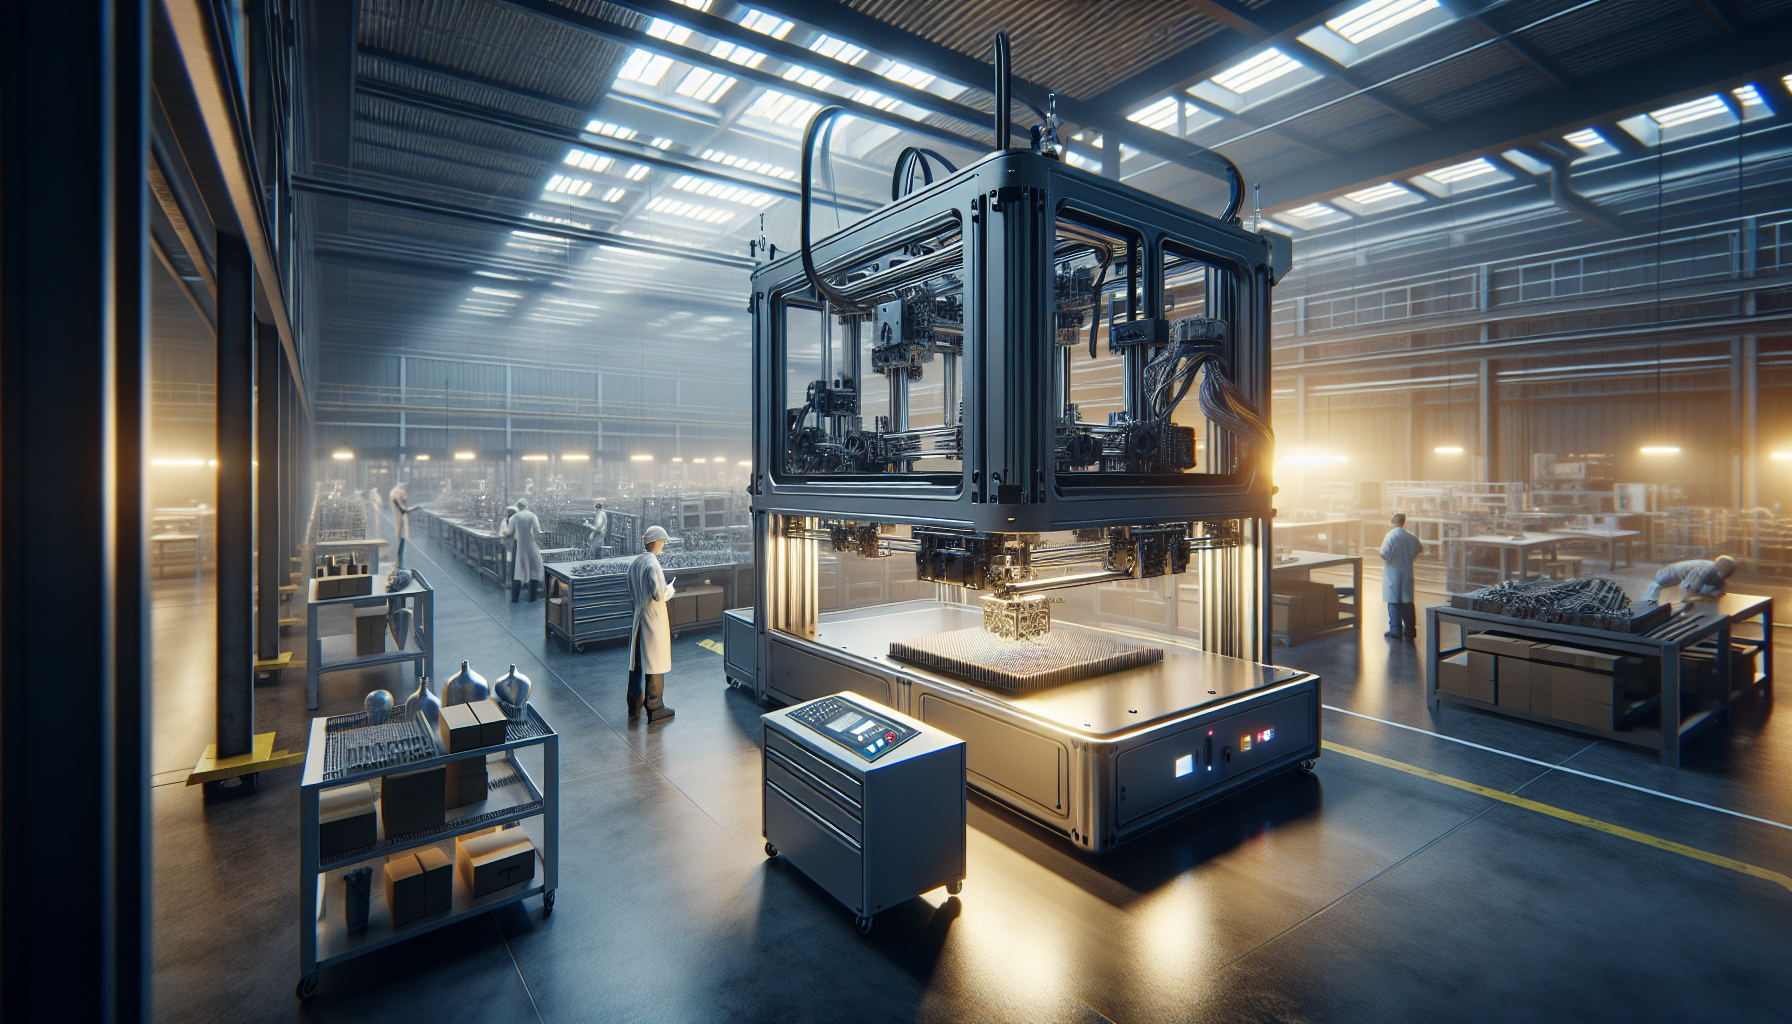 découvrez comment l'imprimante 3d industrielle révolutionne la fabrication et ses applications dans divers secteurs industriels.